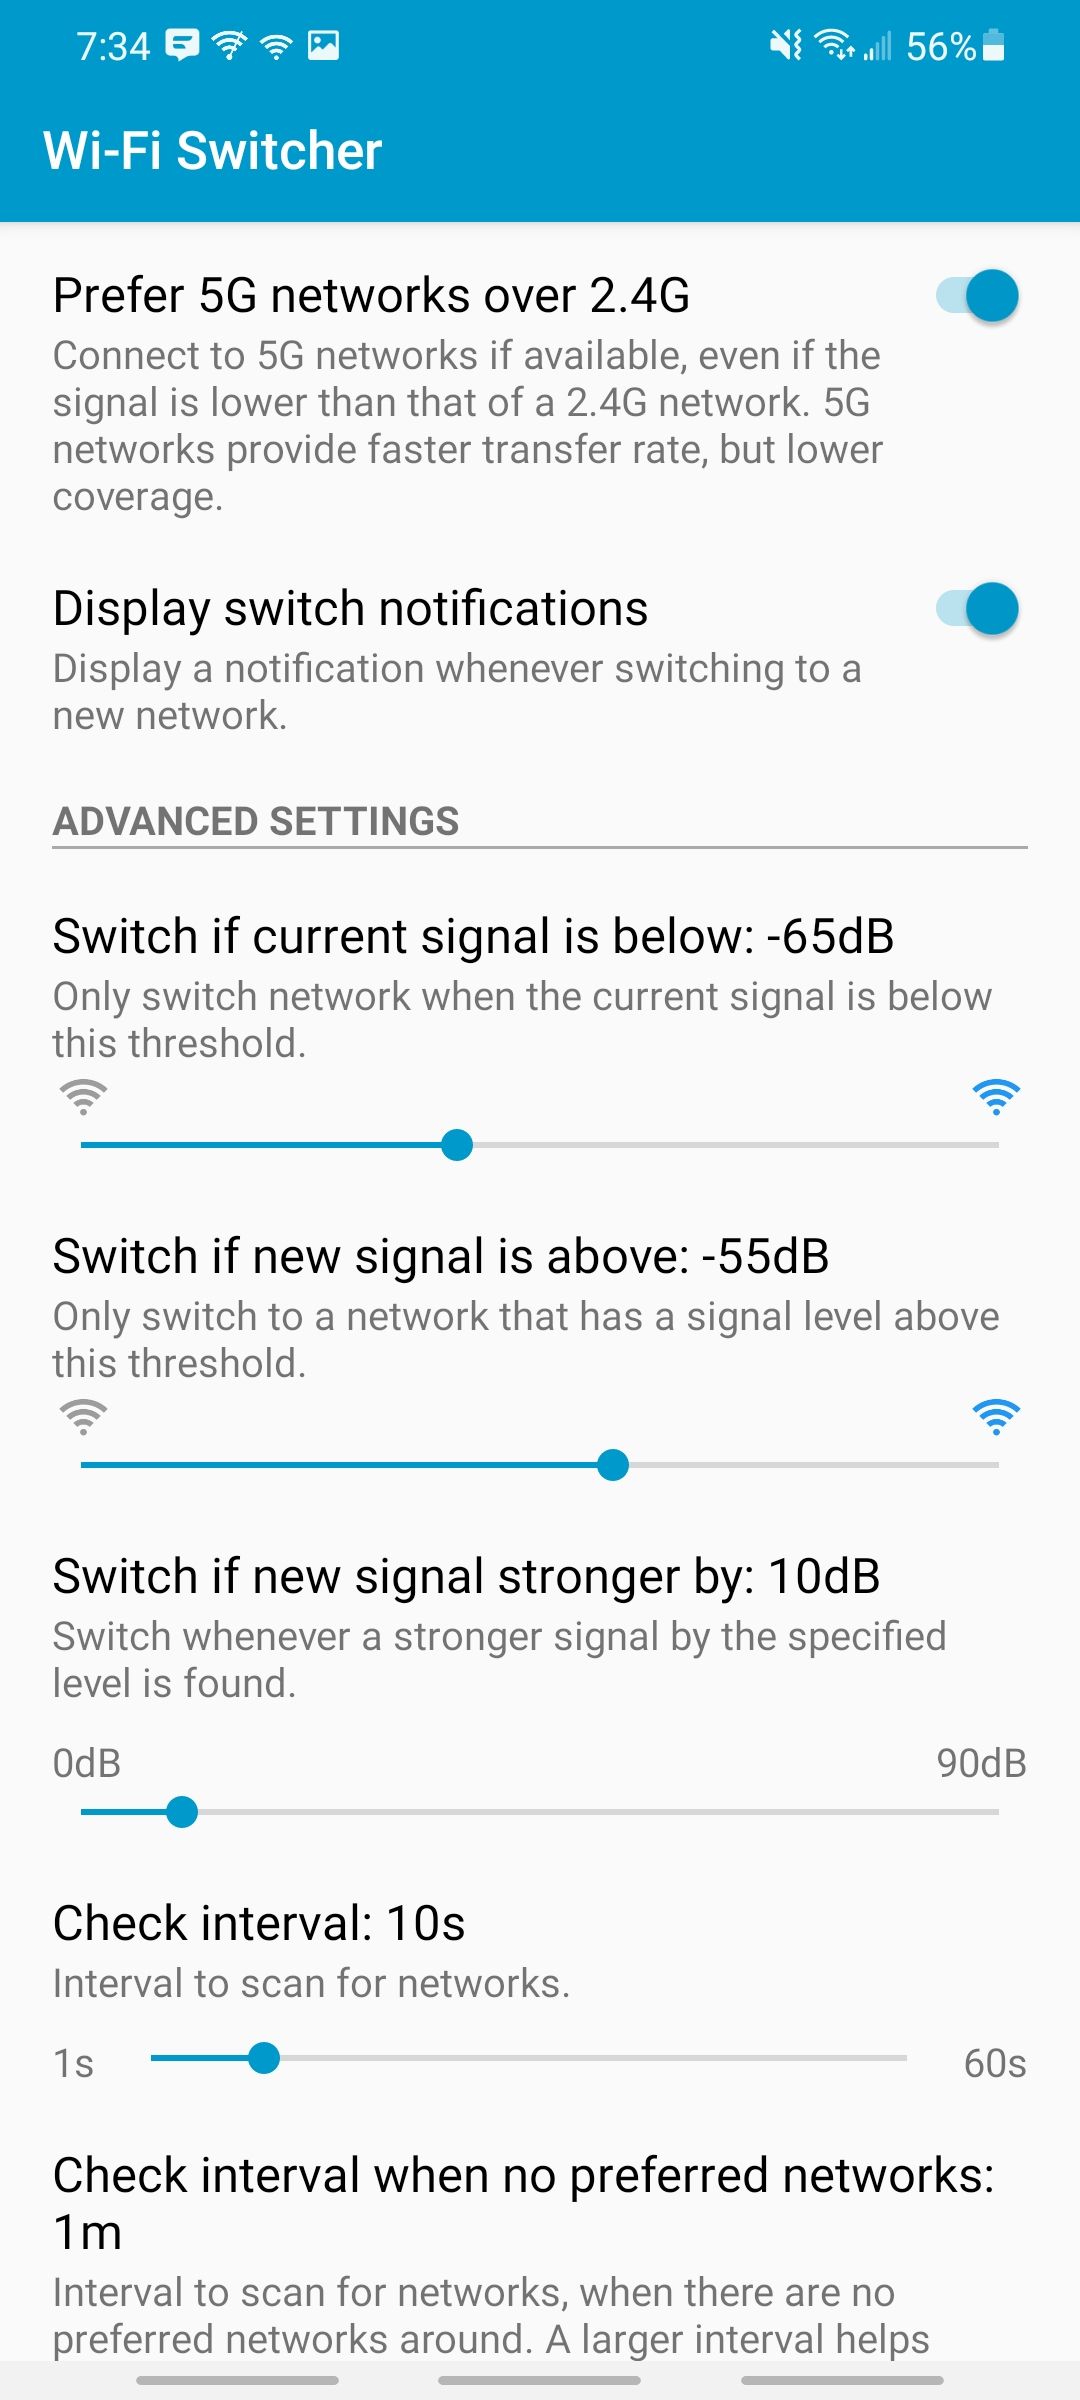 wifi switcher app settings